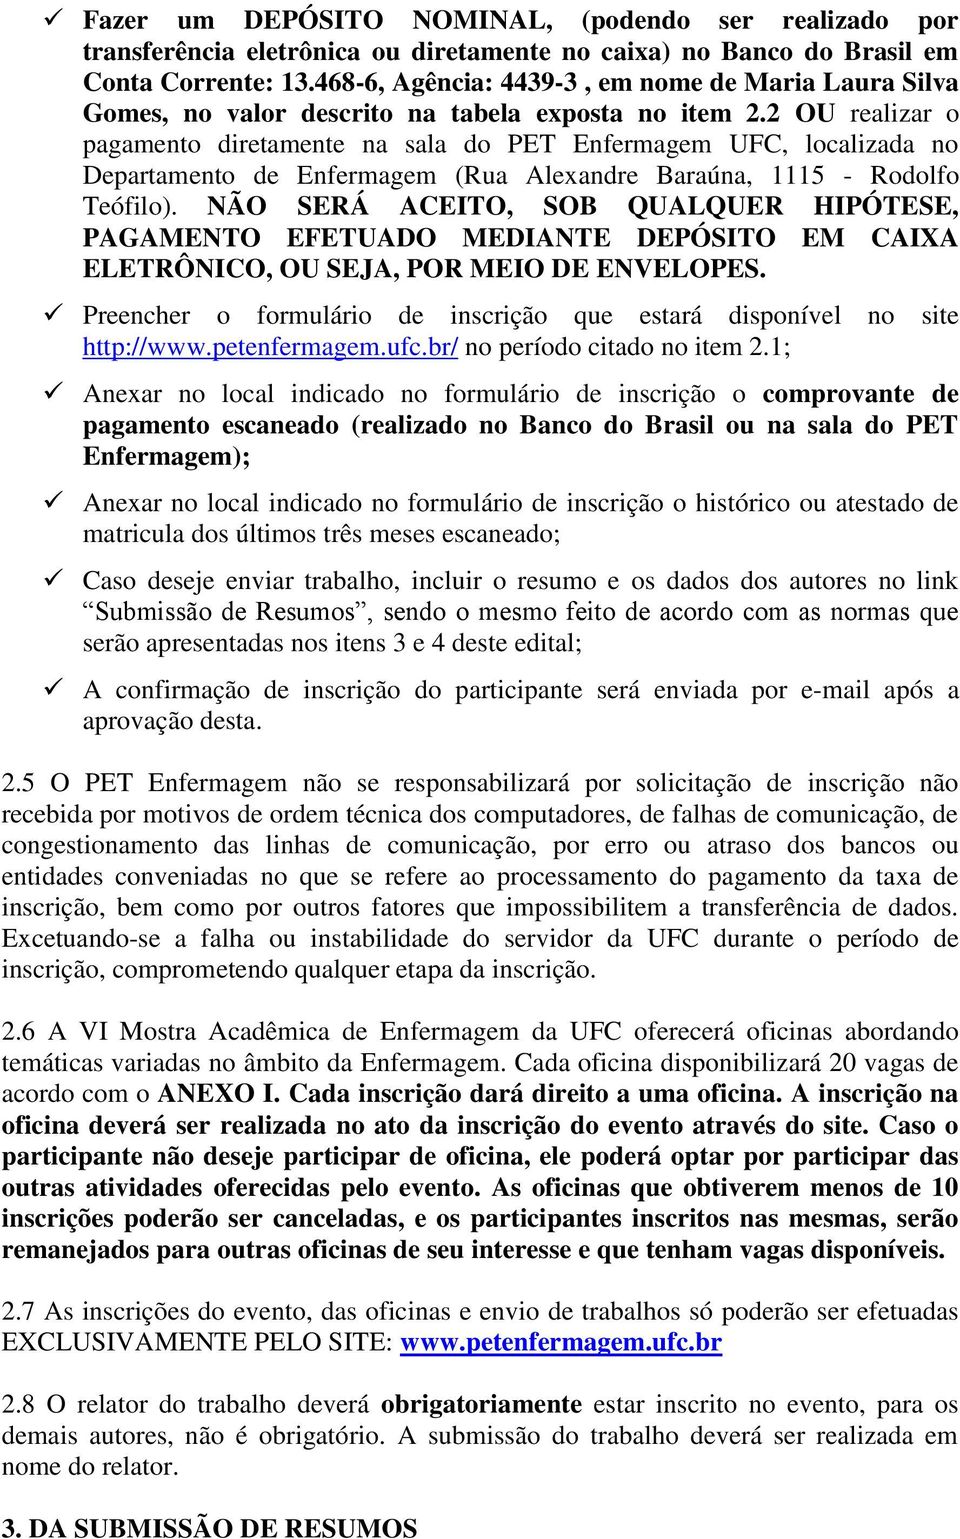 2 OU realizar o pagamento diretamente na sala do PET Enfermagem UFC, localizada no Departamento de Enfermagem (Rua Alexandre Baraúna, 1115 - Rodolfo Teófilo).